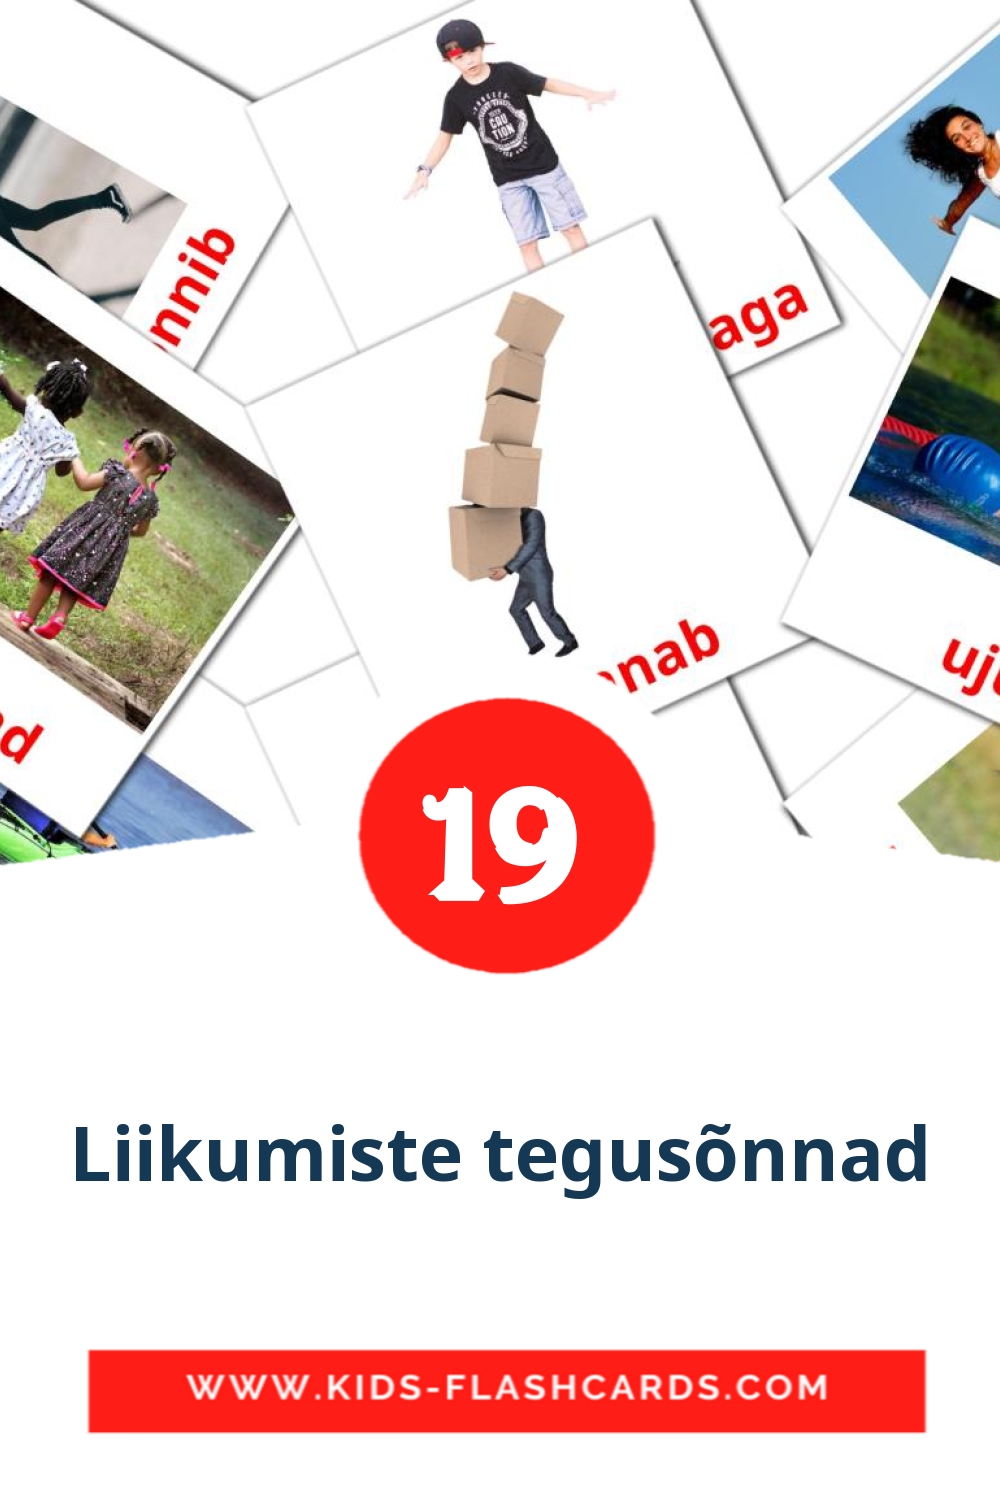 19 cartes illustrées de Liikumiste tegusõnnad pour la maternelle en estonien